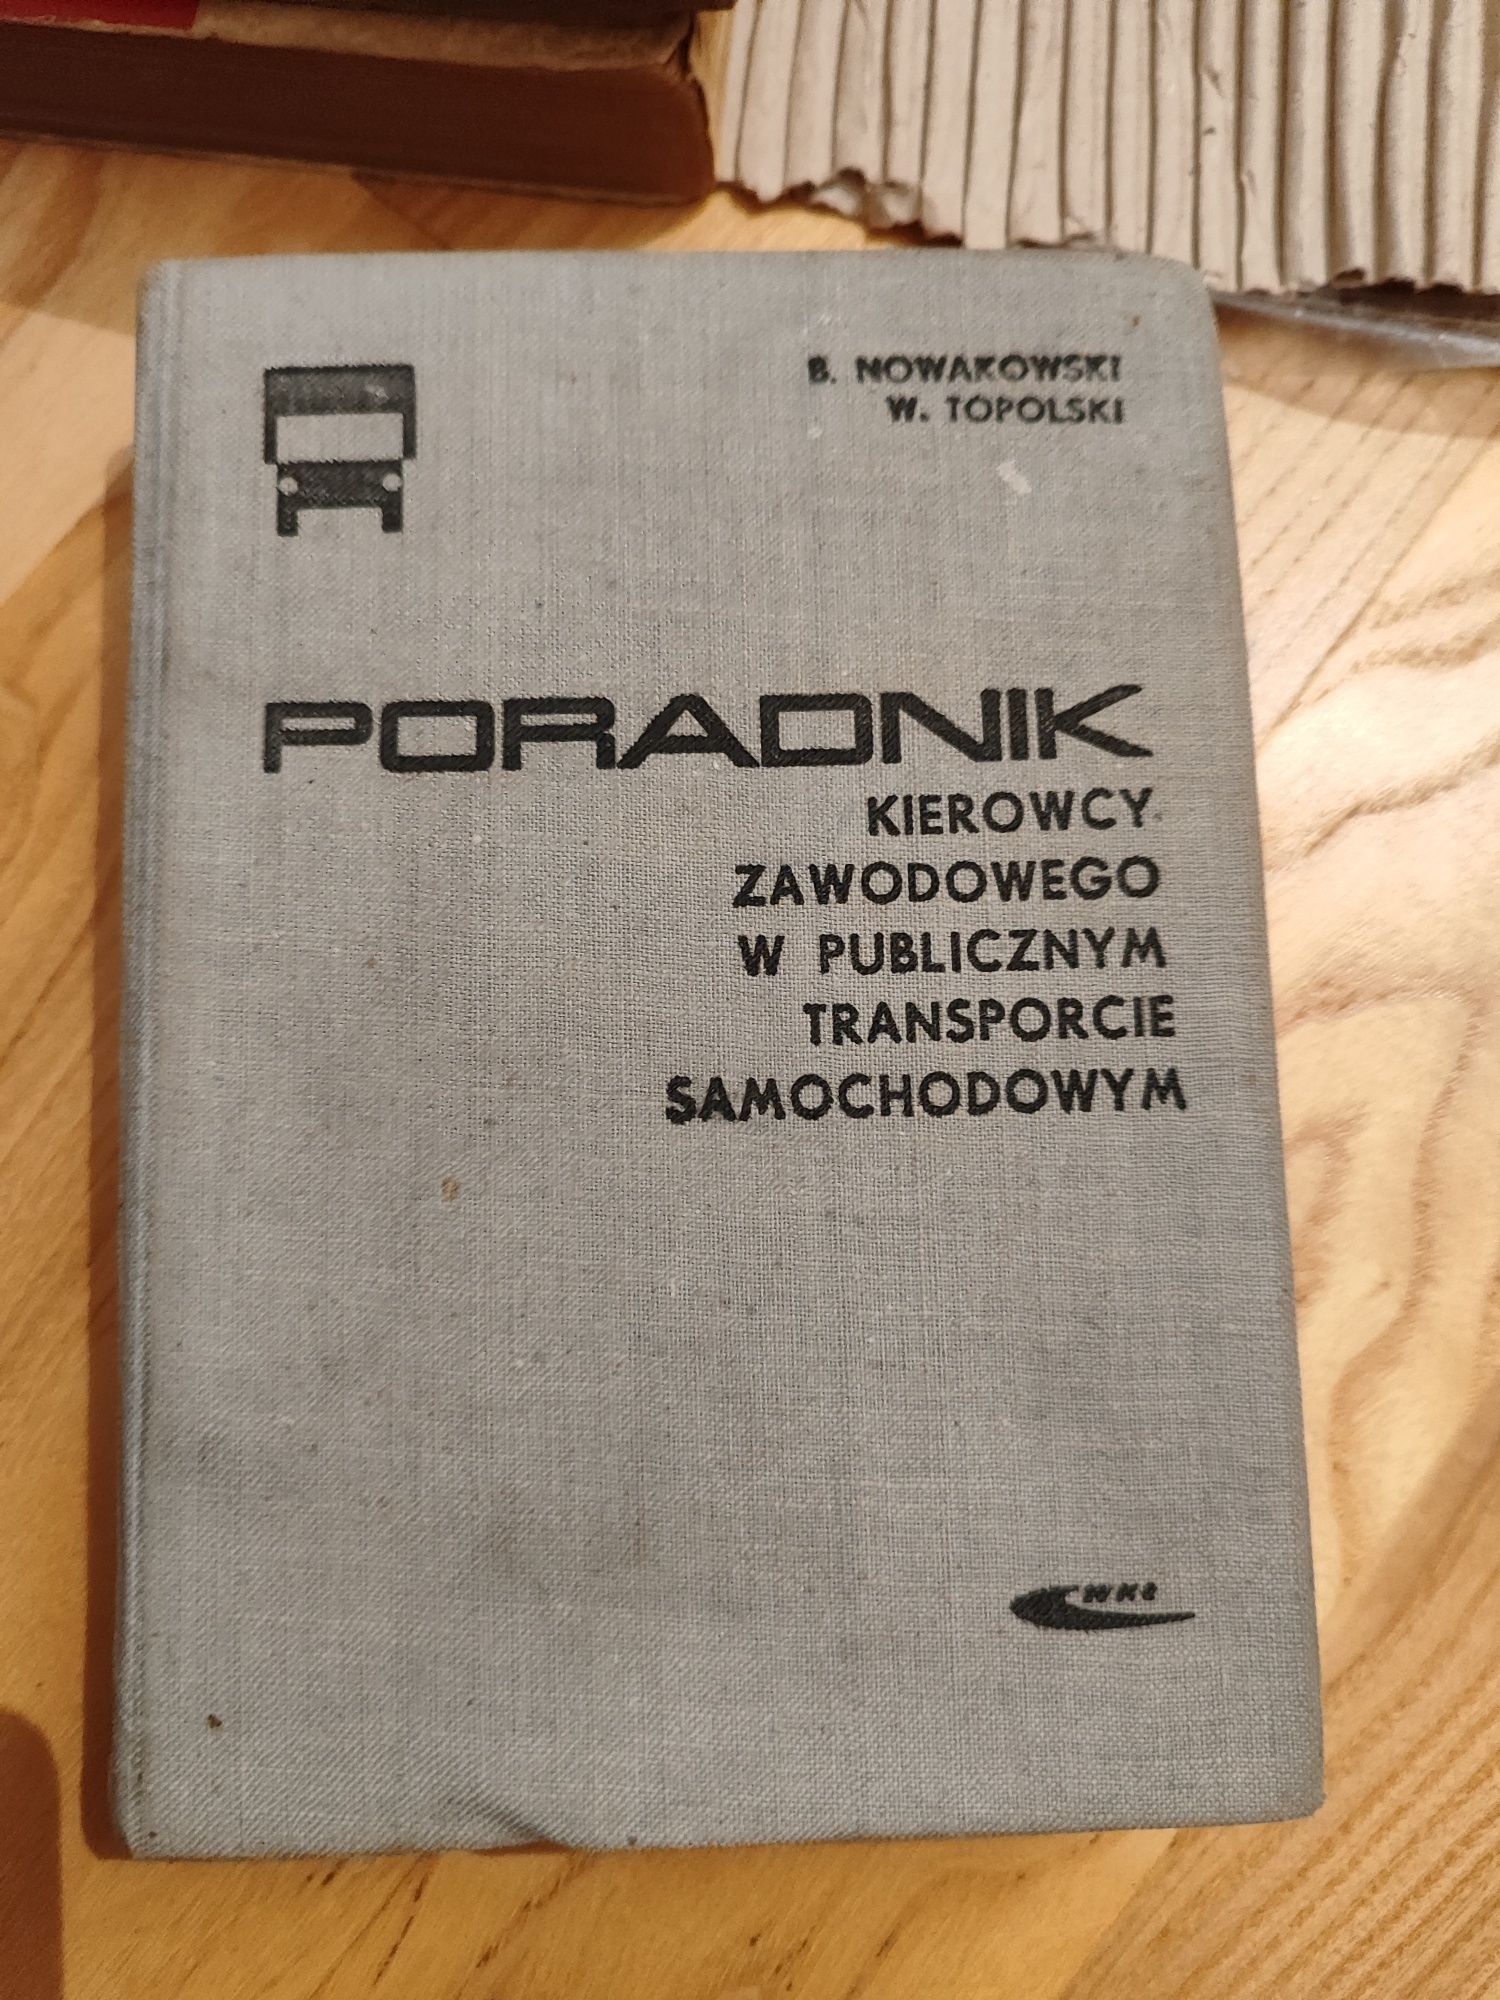 Poradnik kierowcy zawodowego w publicznym transporcie książka